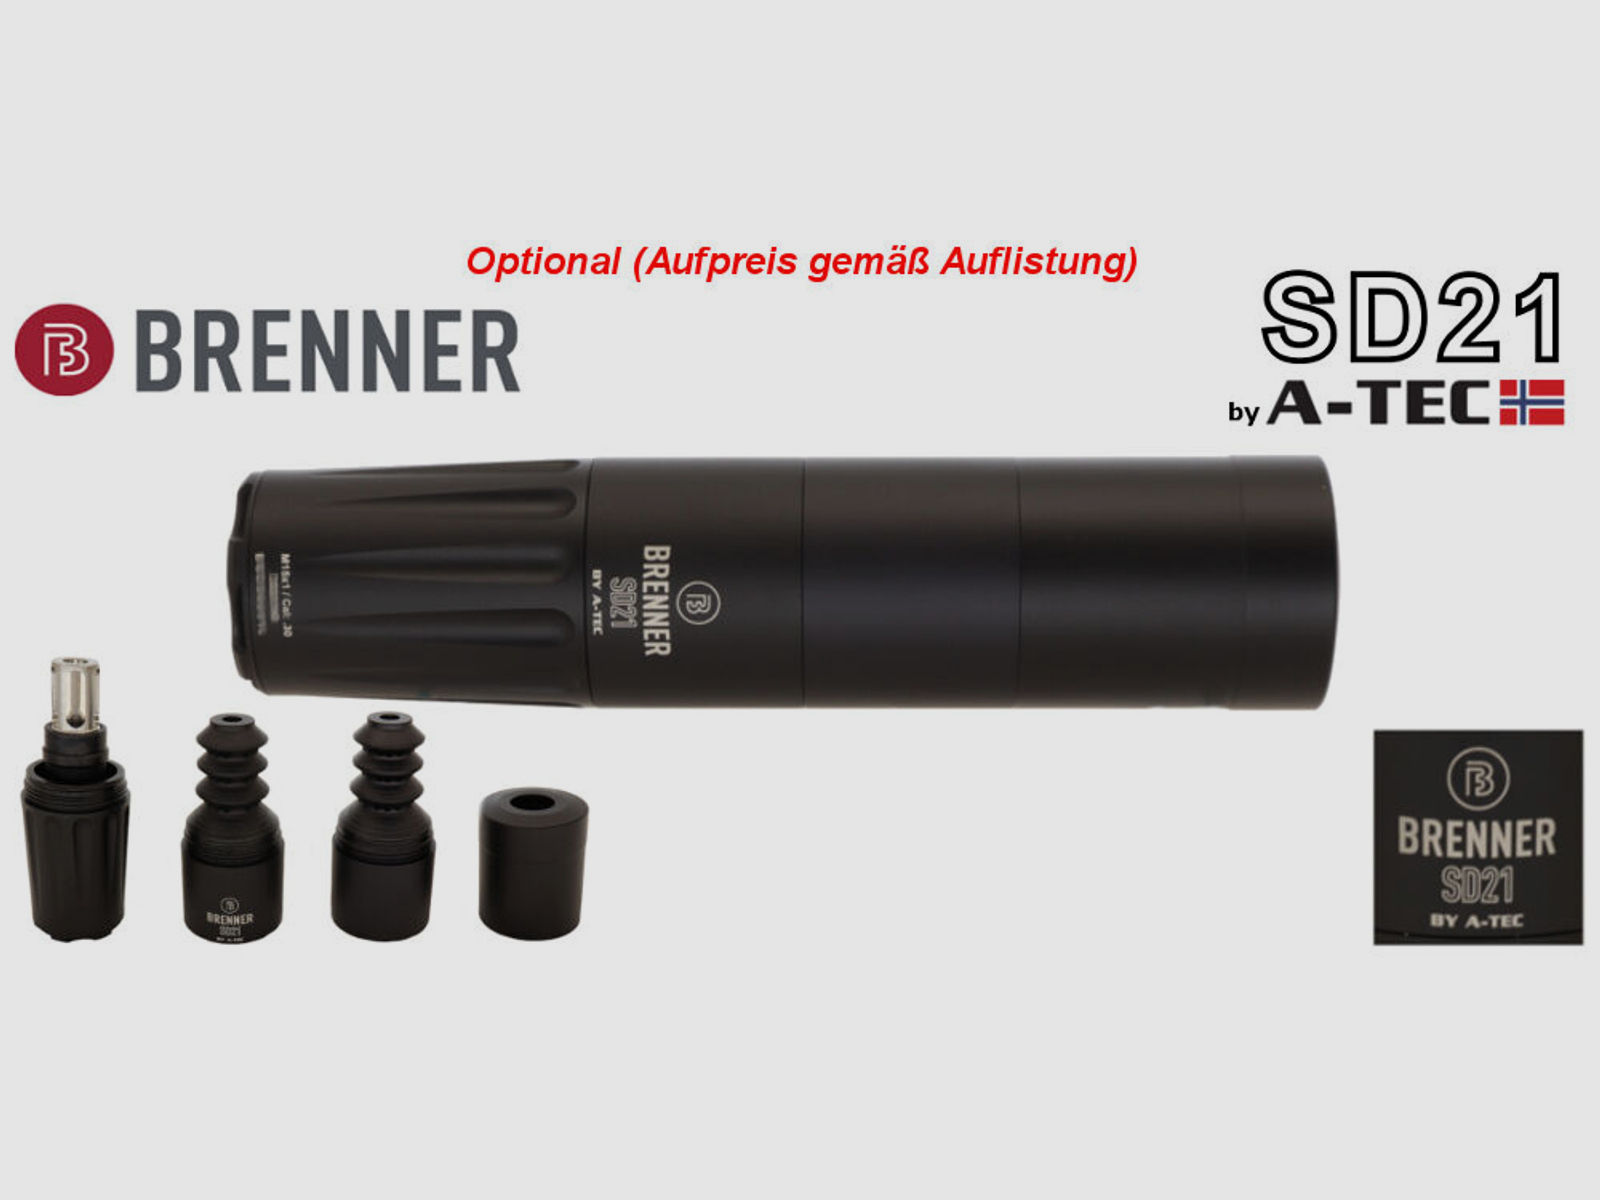 Brenner Komplettpaket:	 Brenner BR-20 Polymer mit Zielfernrohr Hawke Vantage 3-12x56